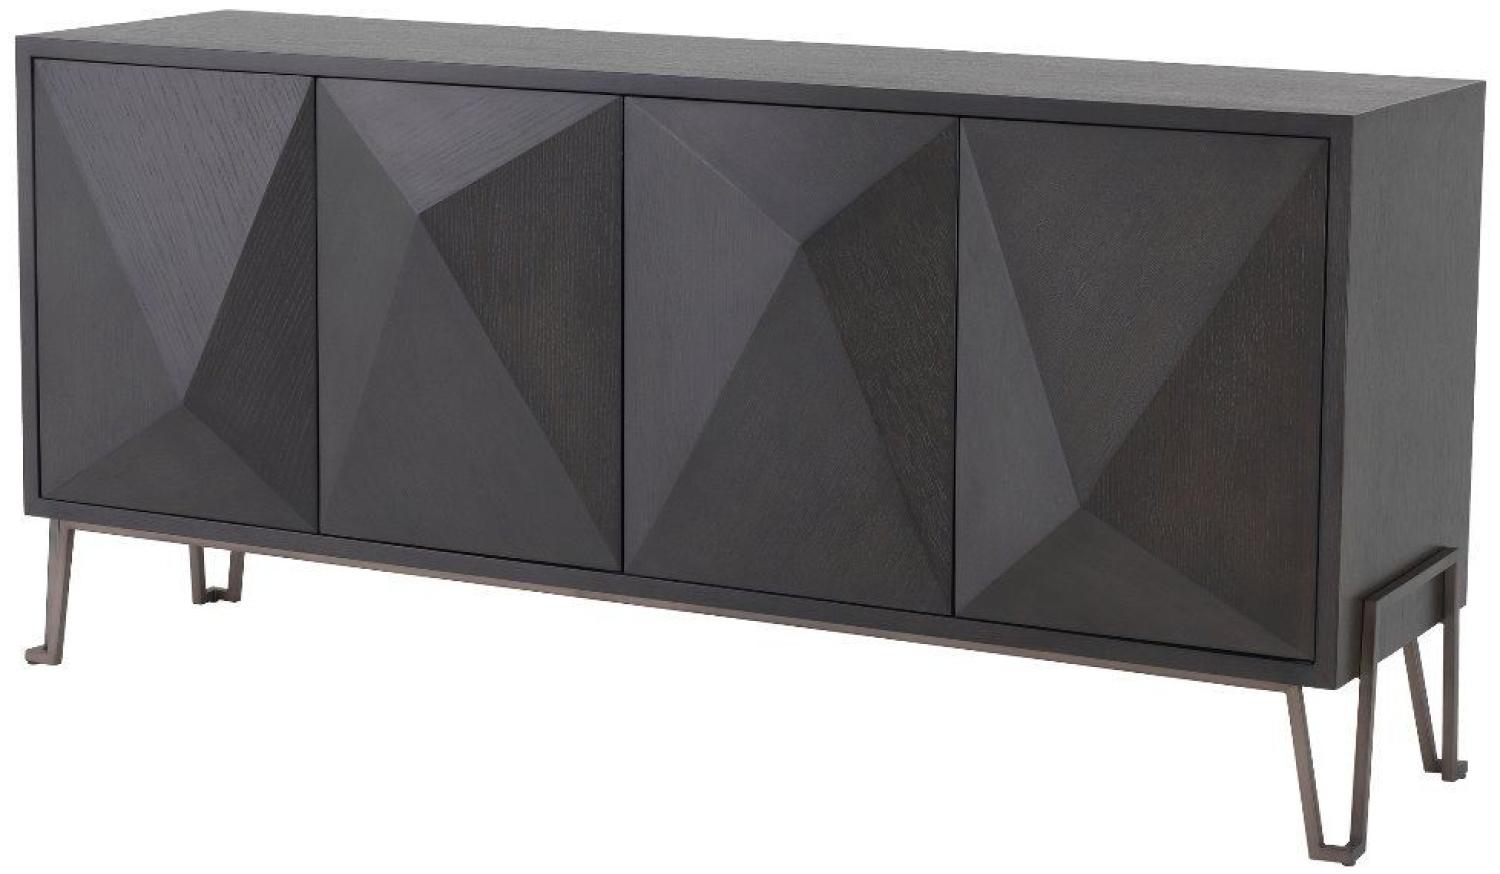 EICHHOLTZ Sideboard Cabinet Highland Eiche charcoal Bild 1